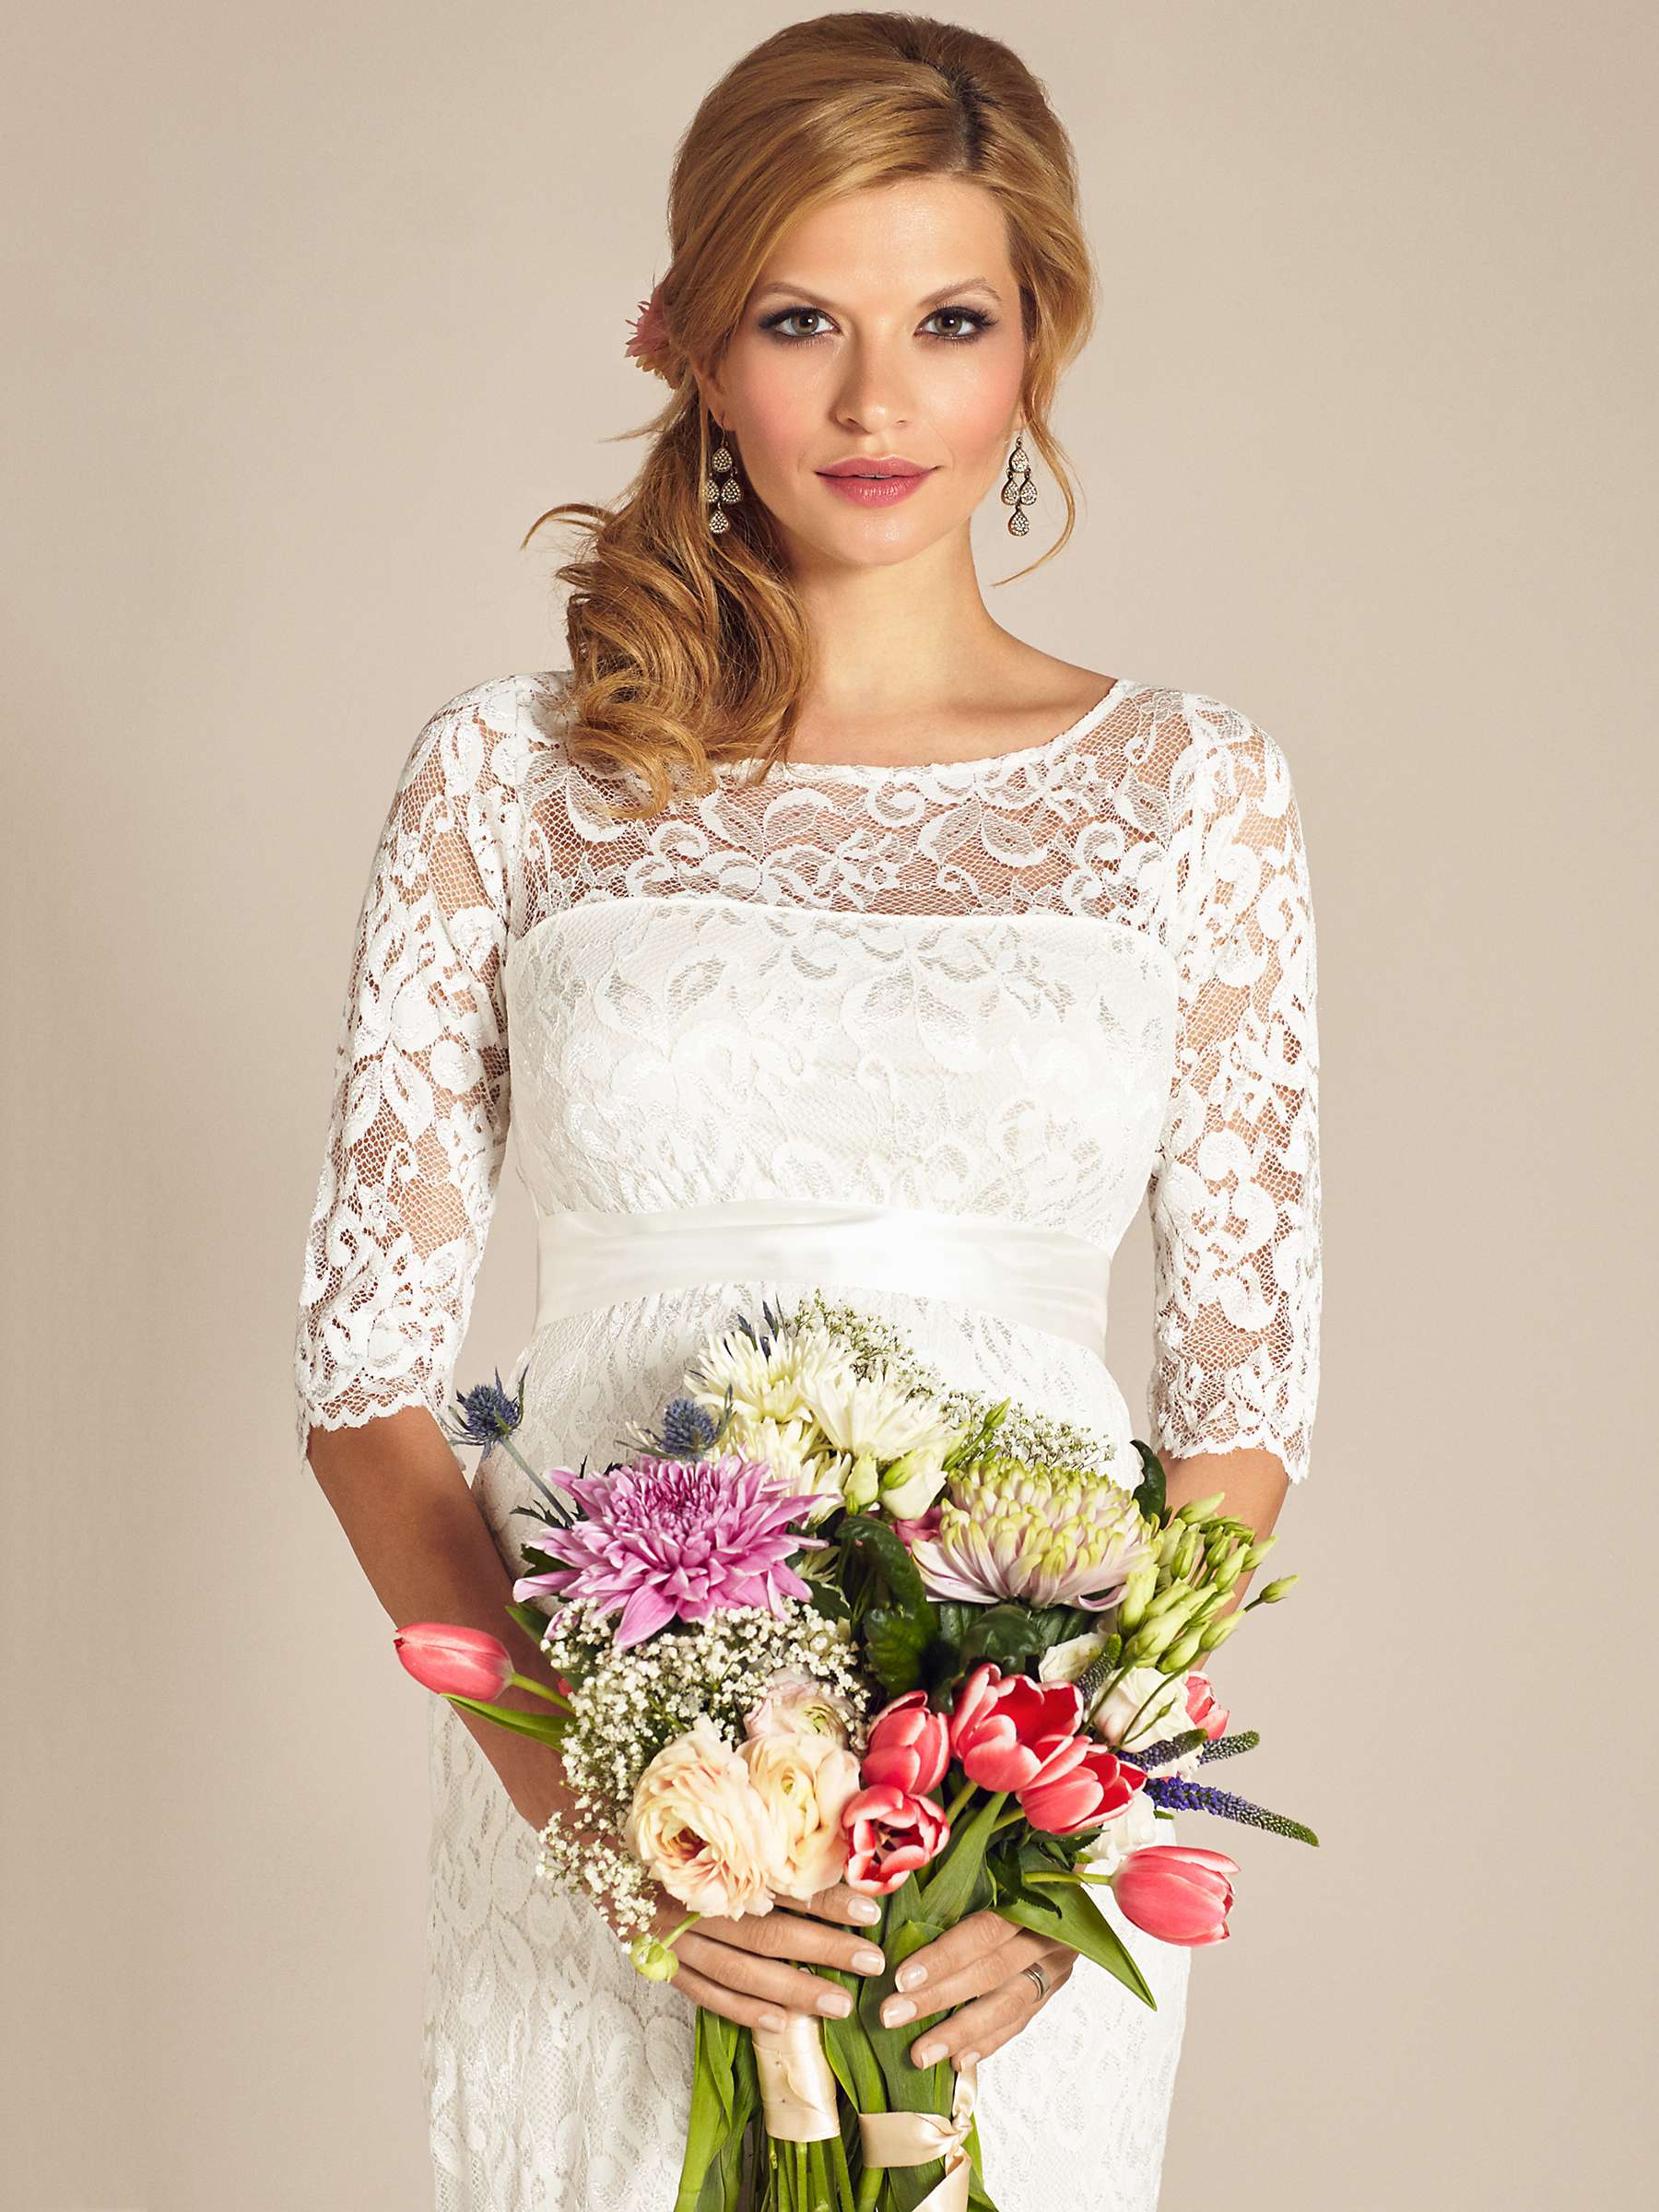 Buy Tiffany Rose Amelia Lace Maternity Wedding Dress, Ivory Online at johnlewis.com